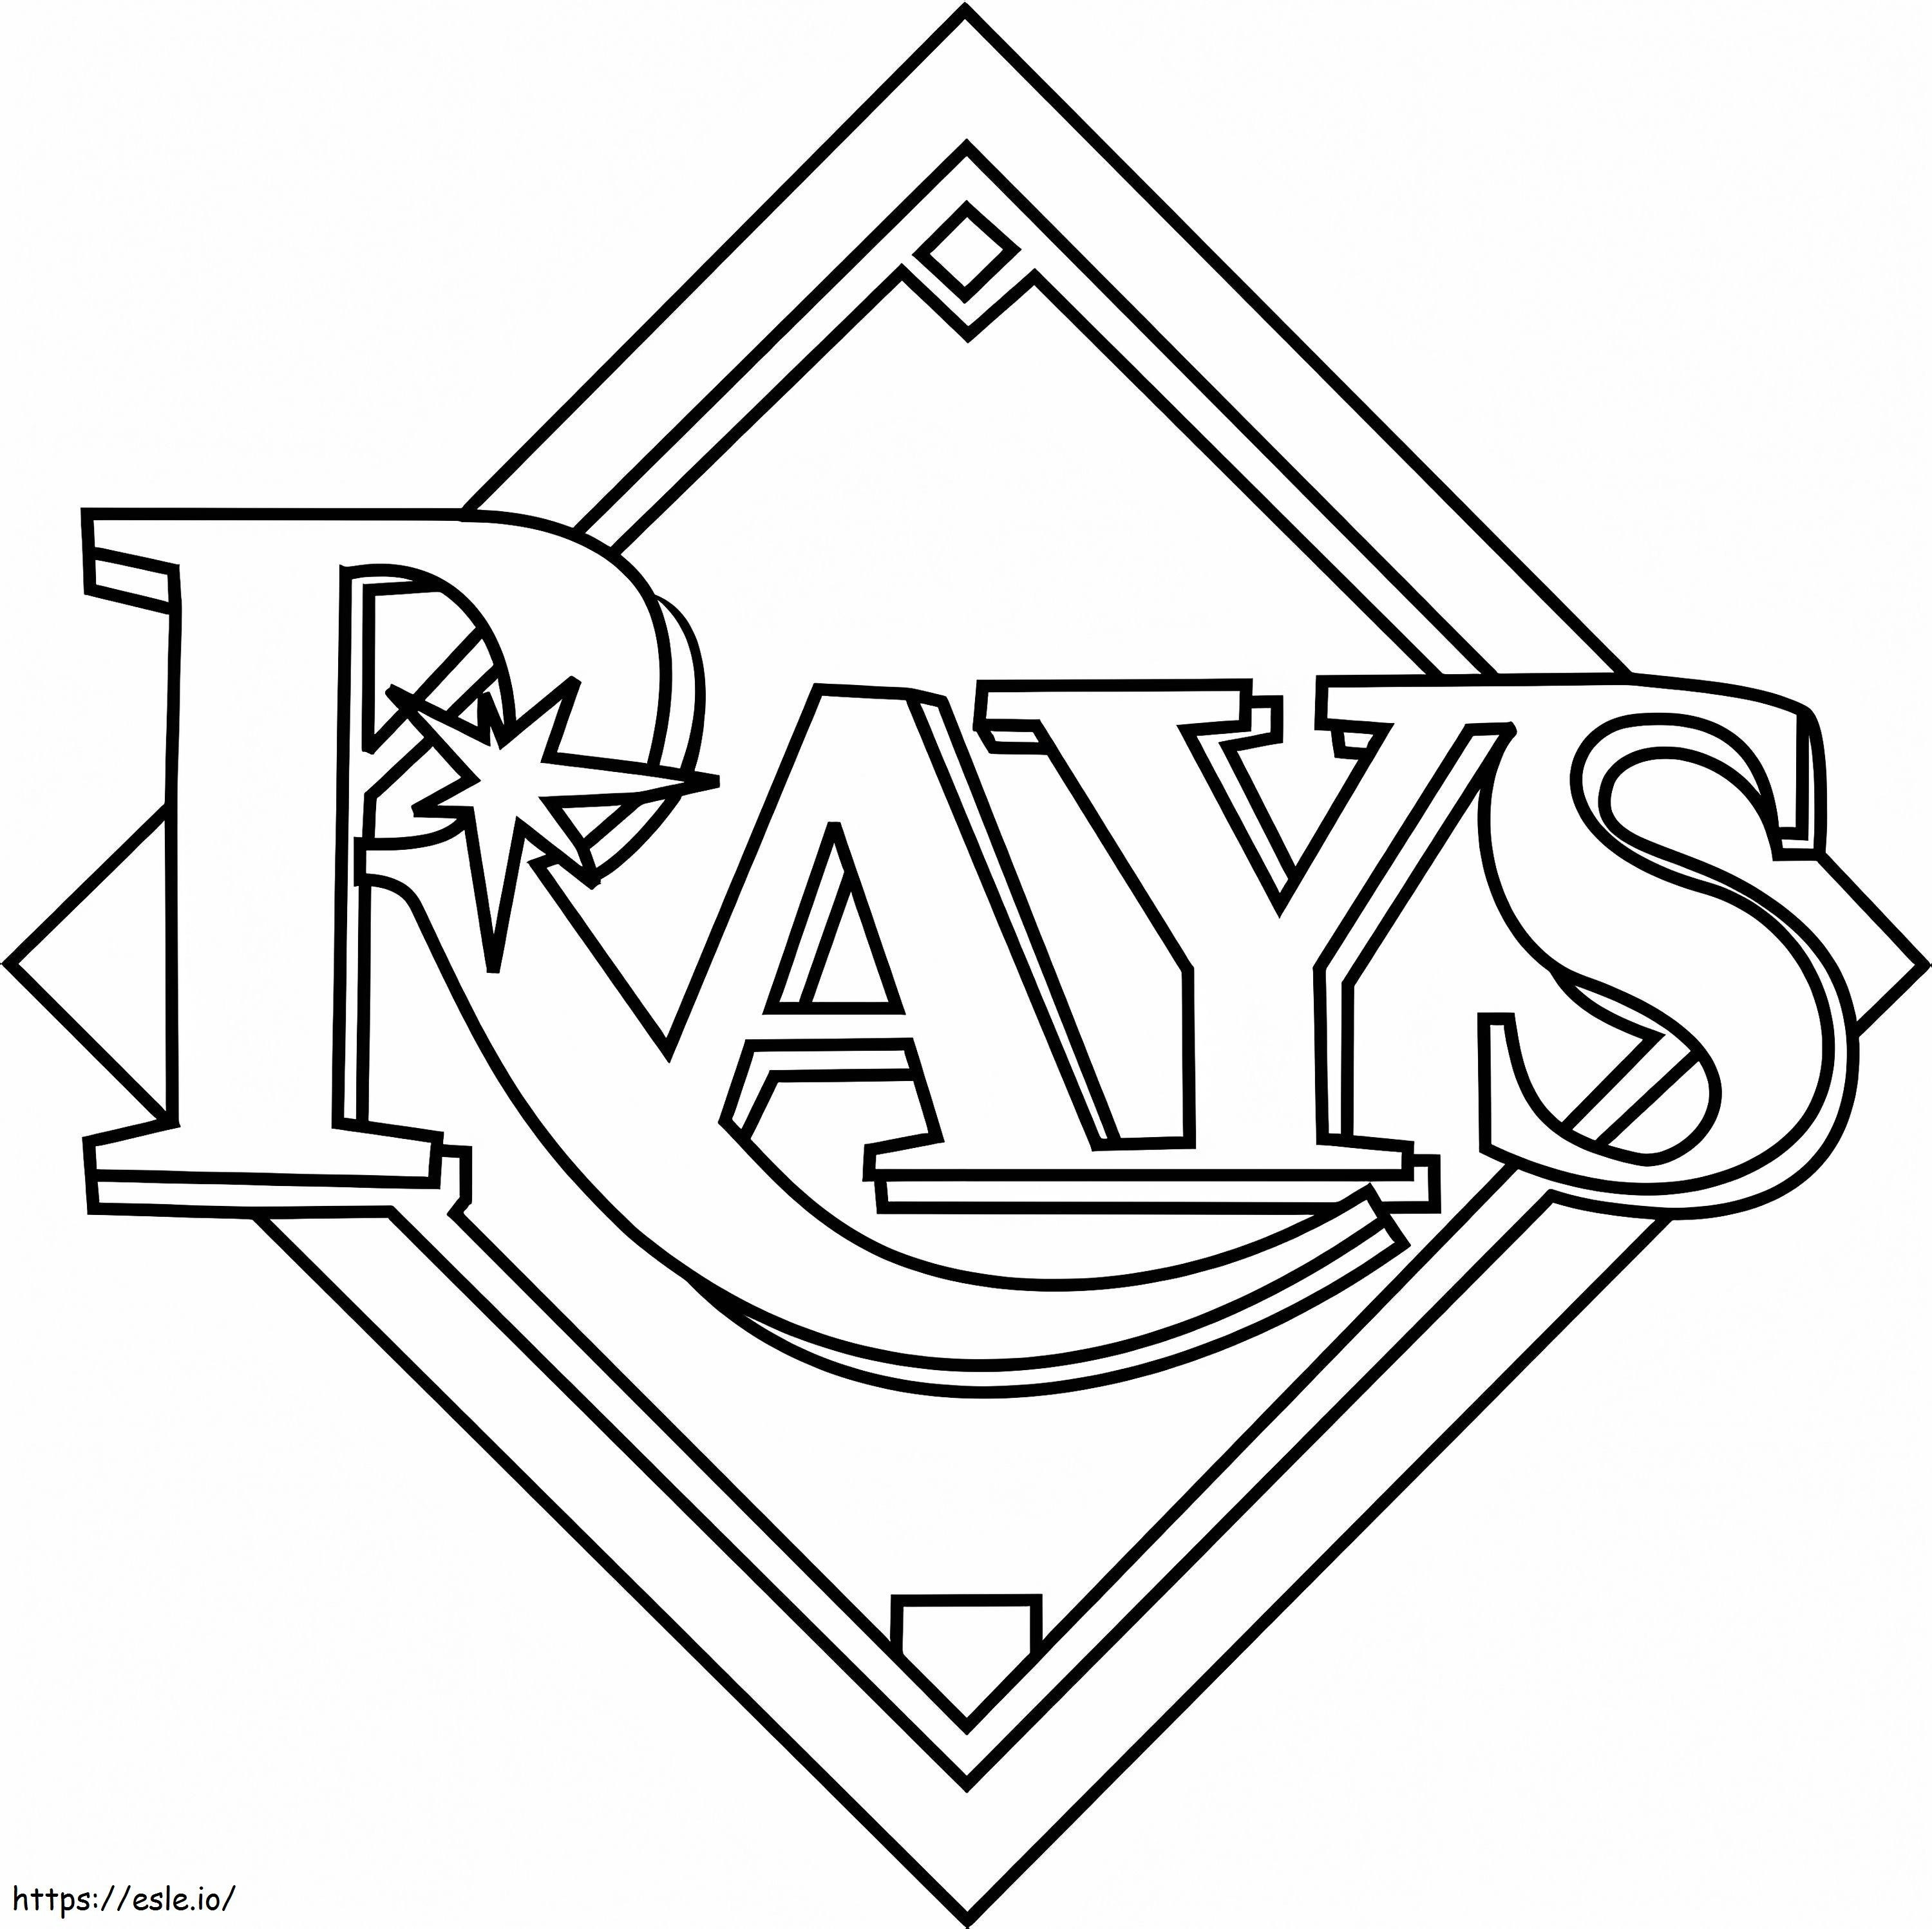 Logotipo de los Rays de Tampa Bay para colorear